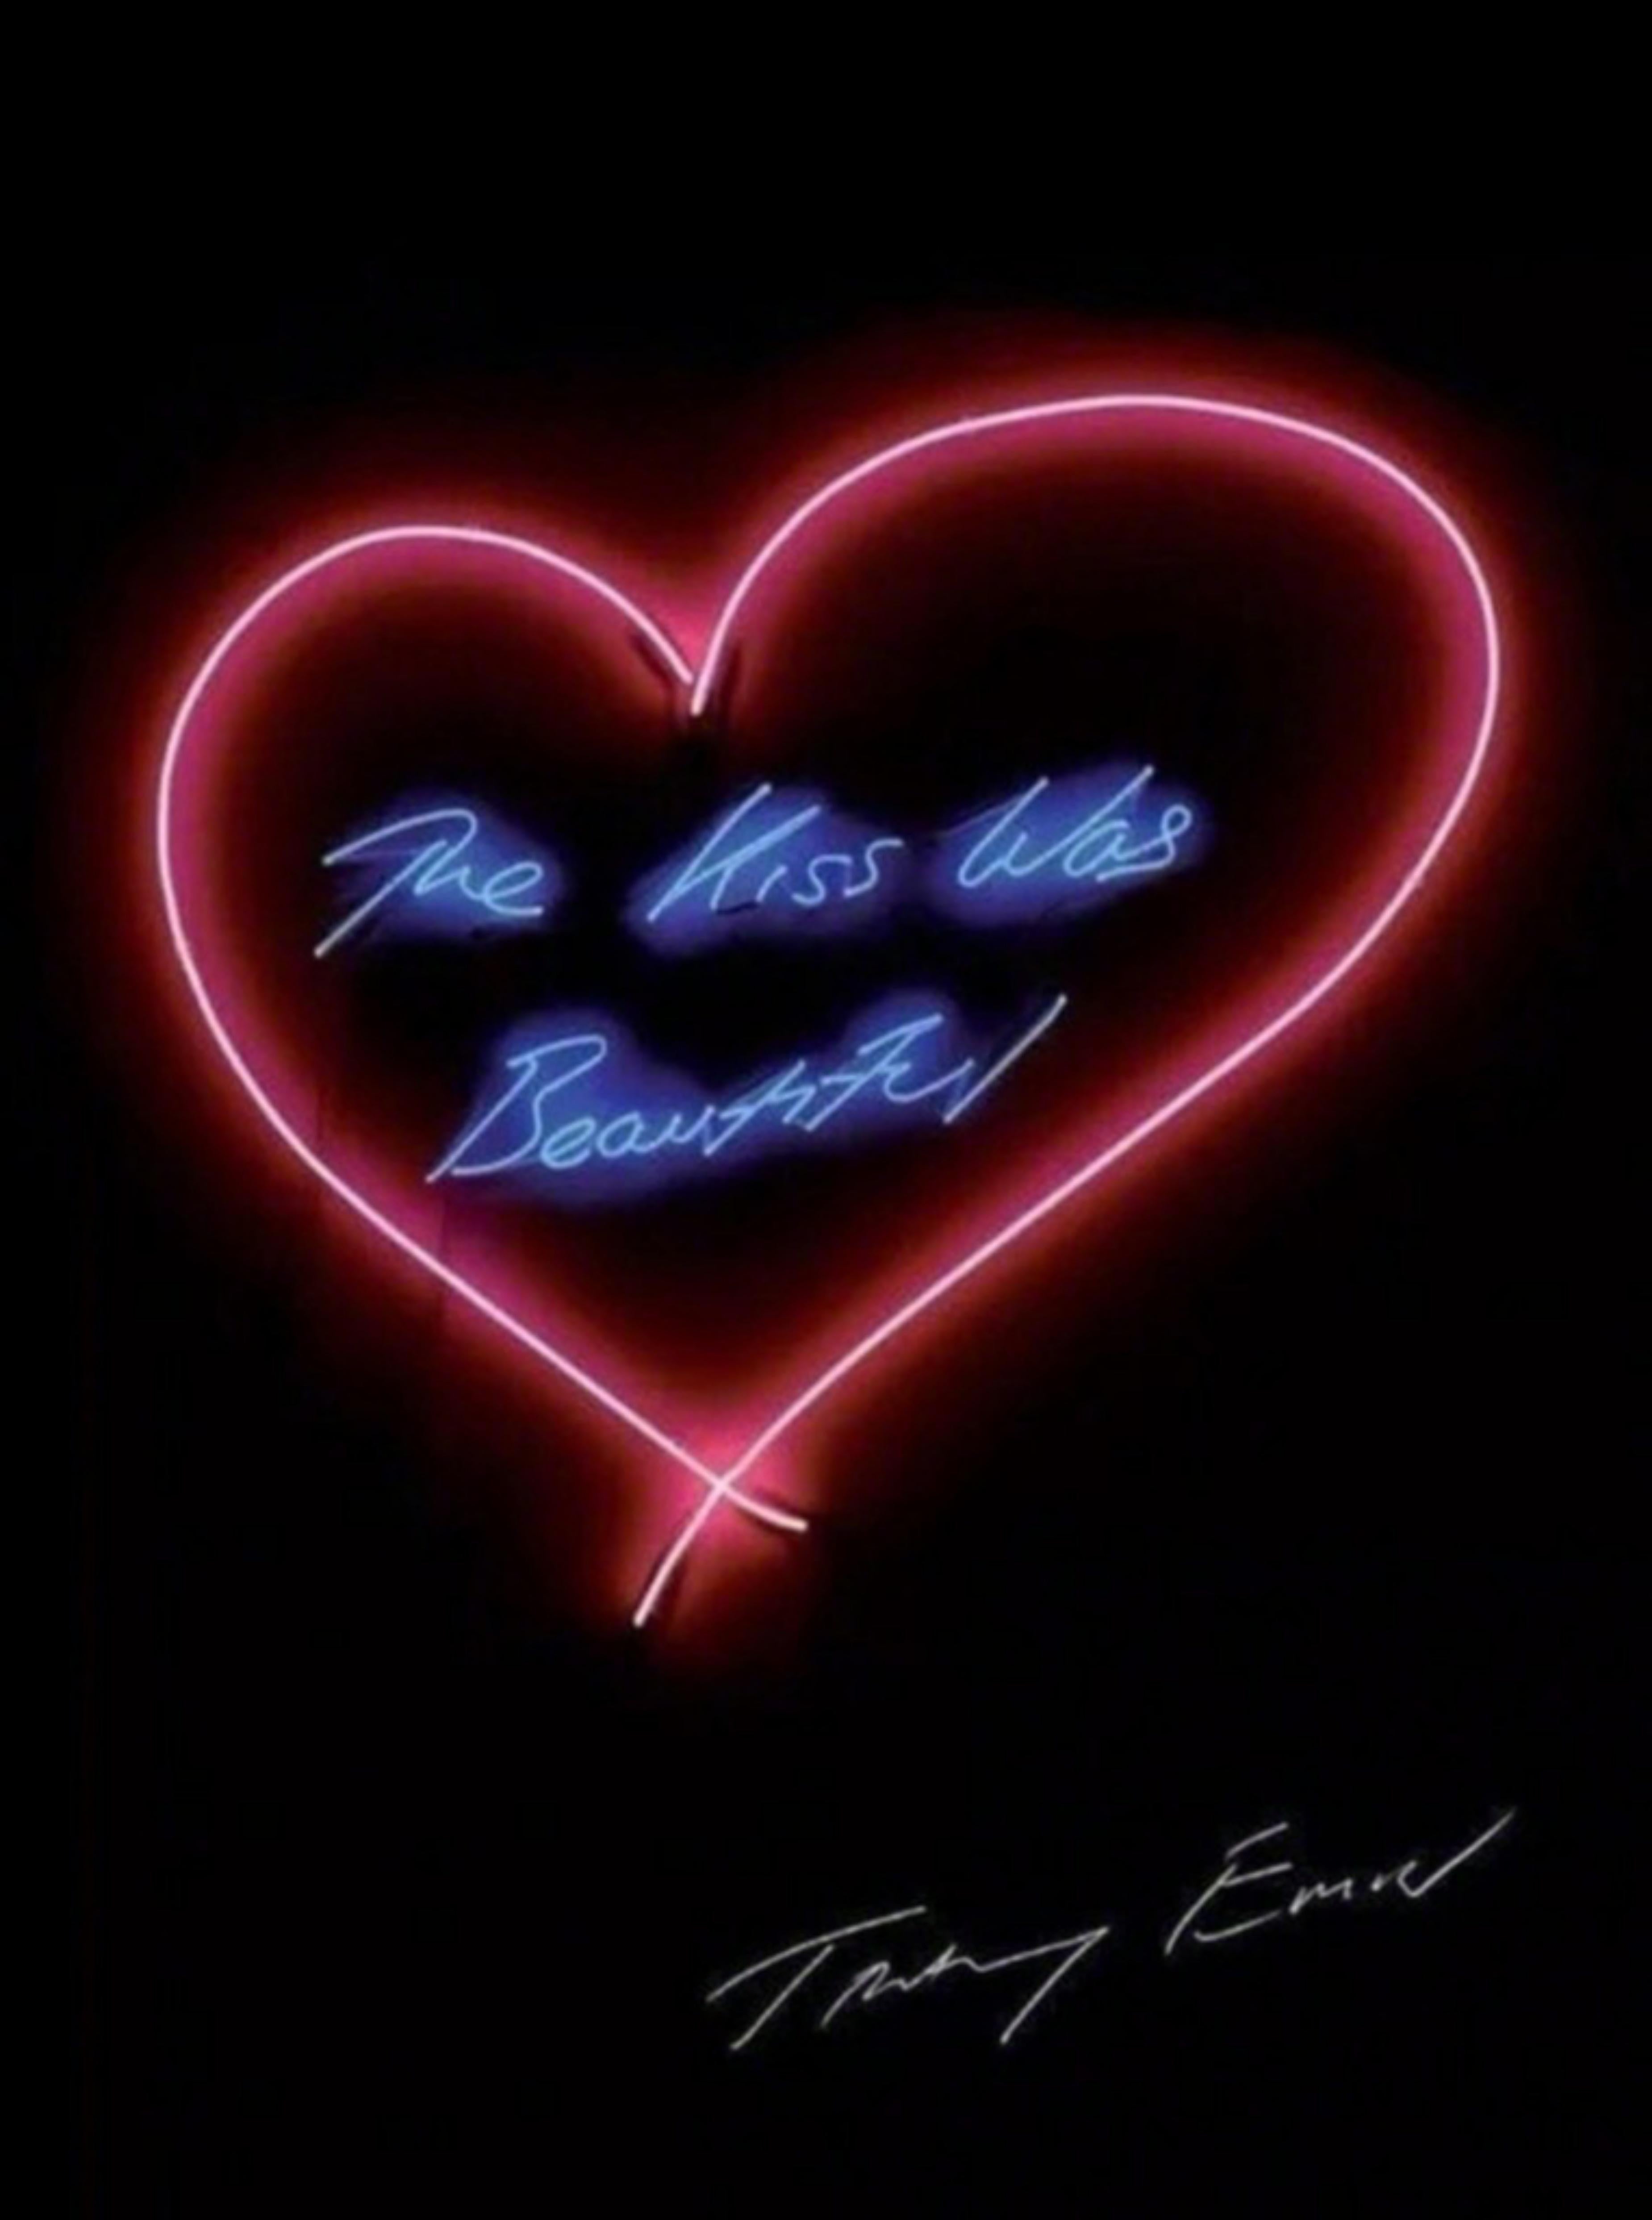 The Kiss Was Beautiful – wunderschöner handsignierter Druck in limitierter Auflage von YBA-Star in limitierter Auflage